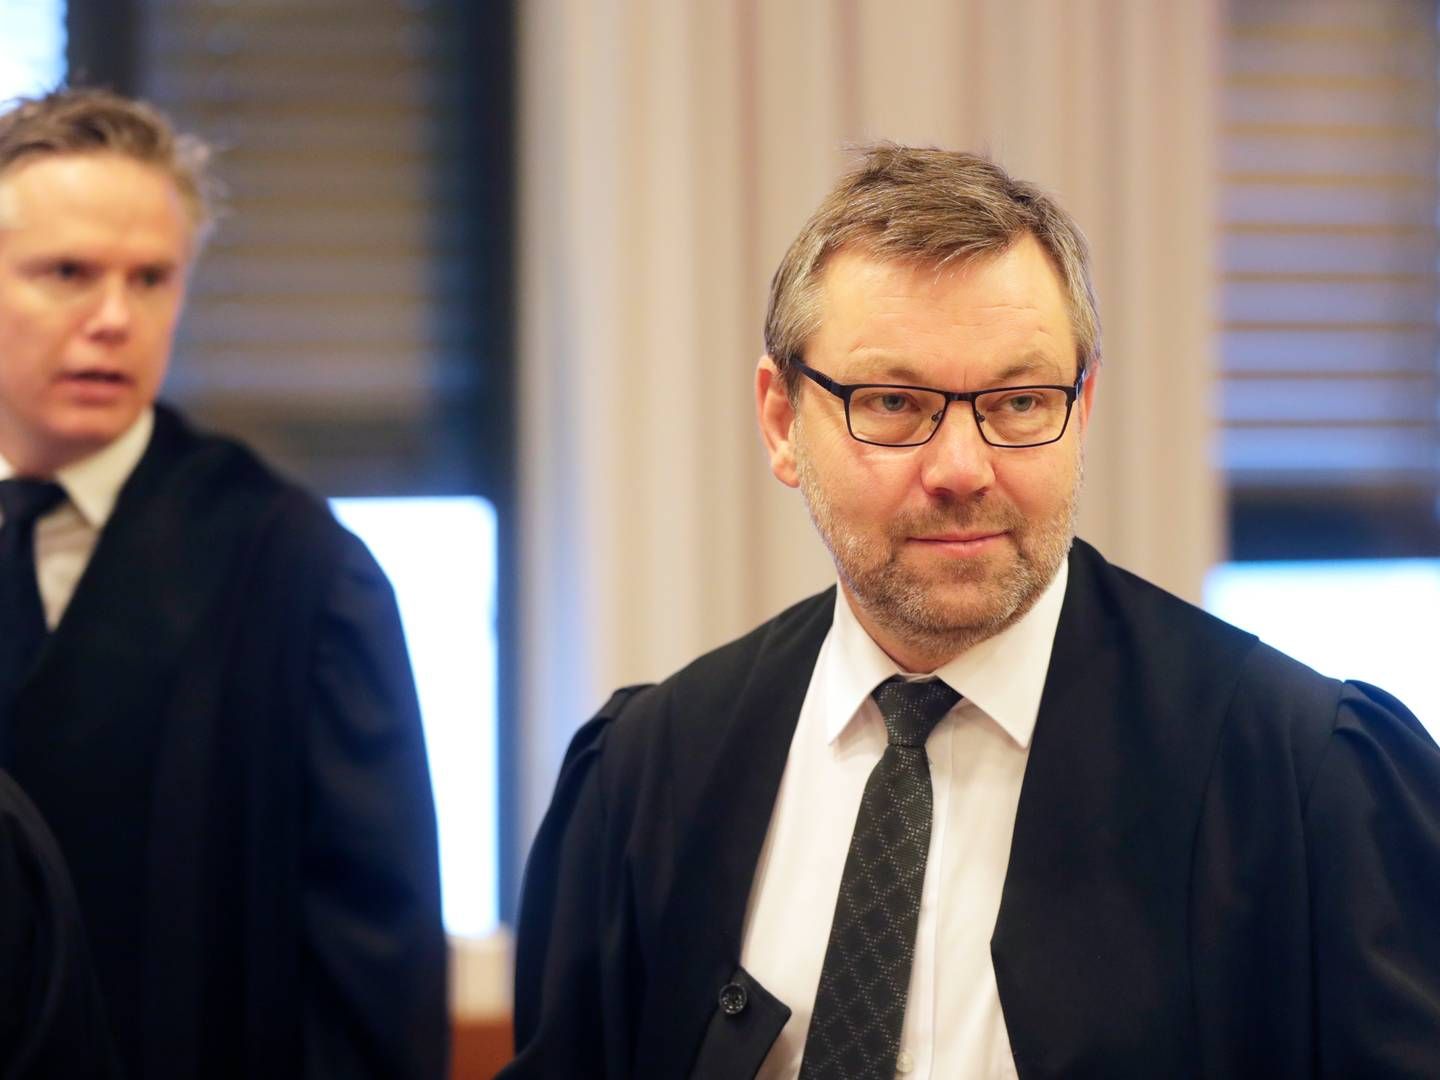 BISTÅR FEFO: Hjort-partner Frode Andersen Innjord ønsker ikke å kommentere hva advokatfirmaet har fakturert i saken. Her er han avbildet under en rettssak i Oslo tingrett i 2017. | Foto: Lise Åserud/NTB